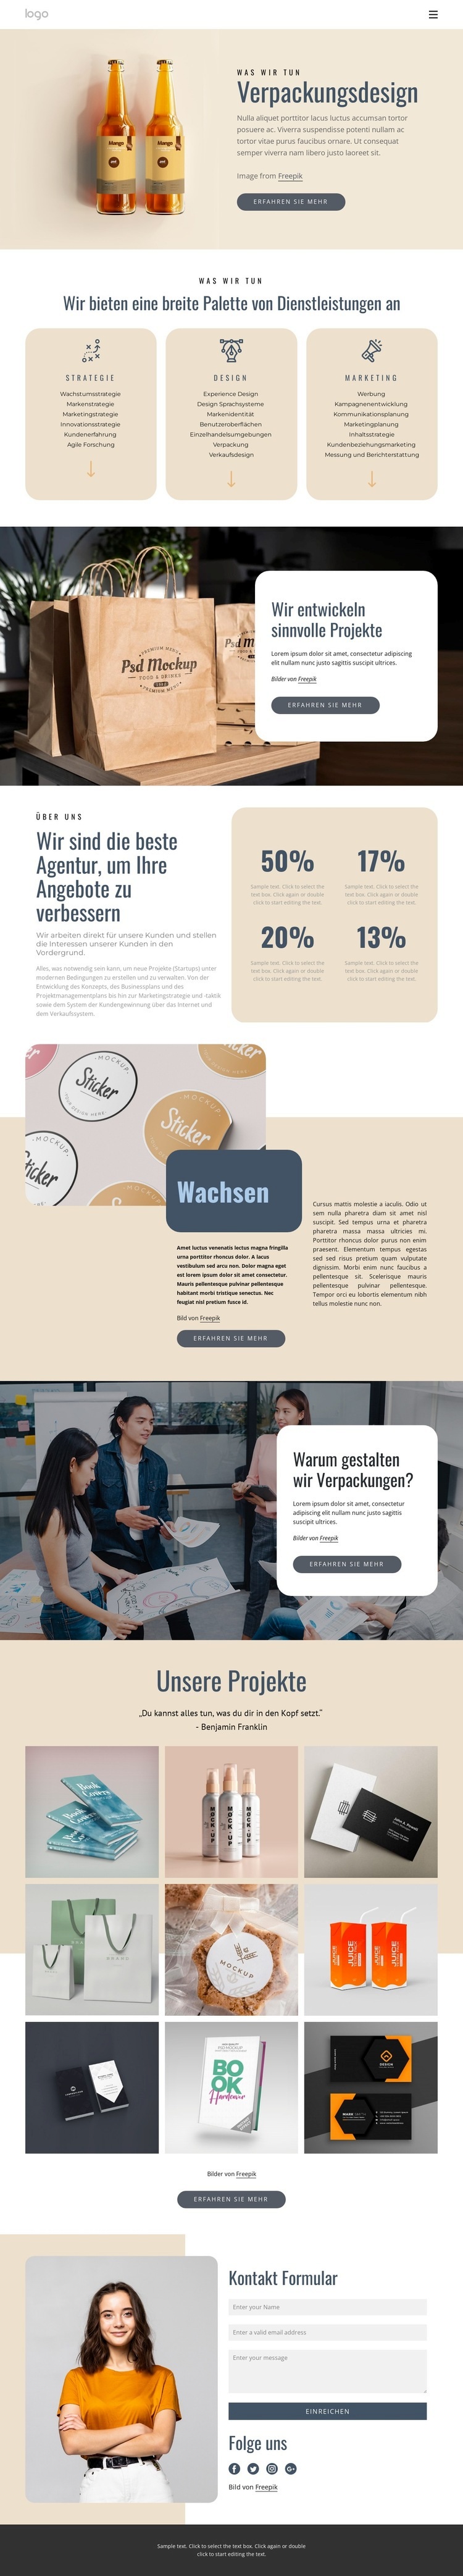 Branding und Verpackungsdesign Website design